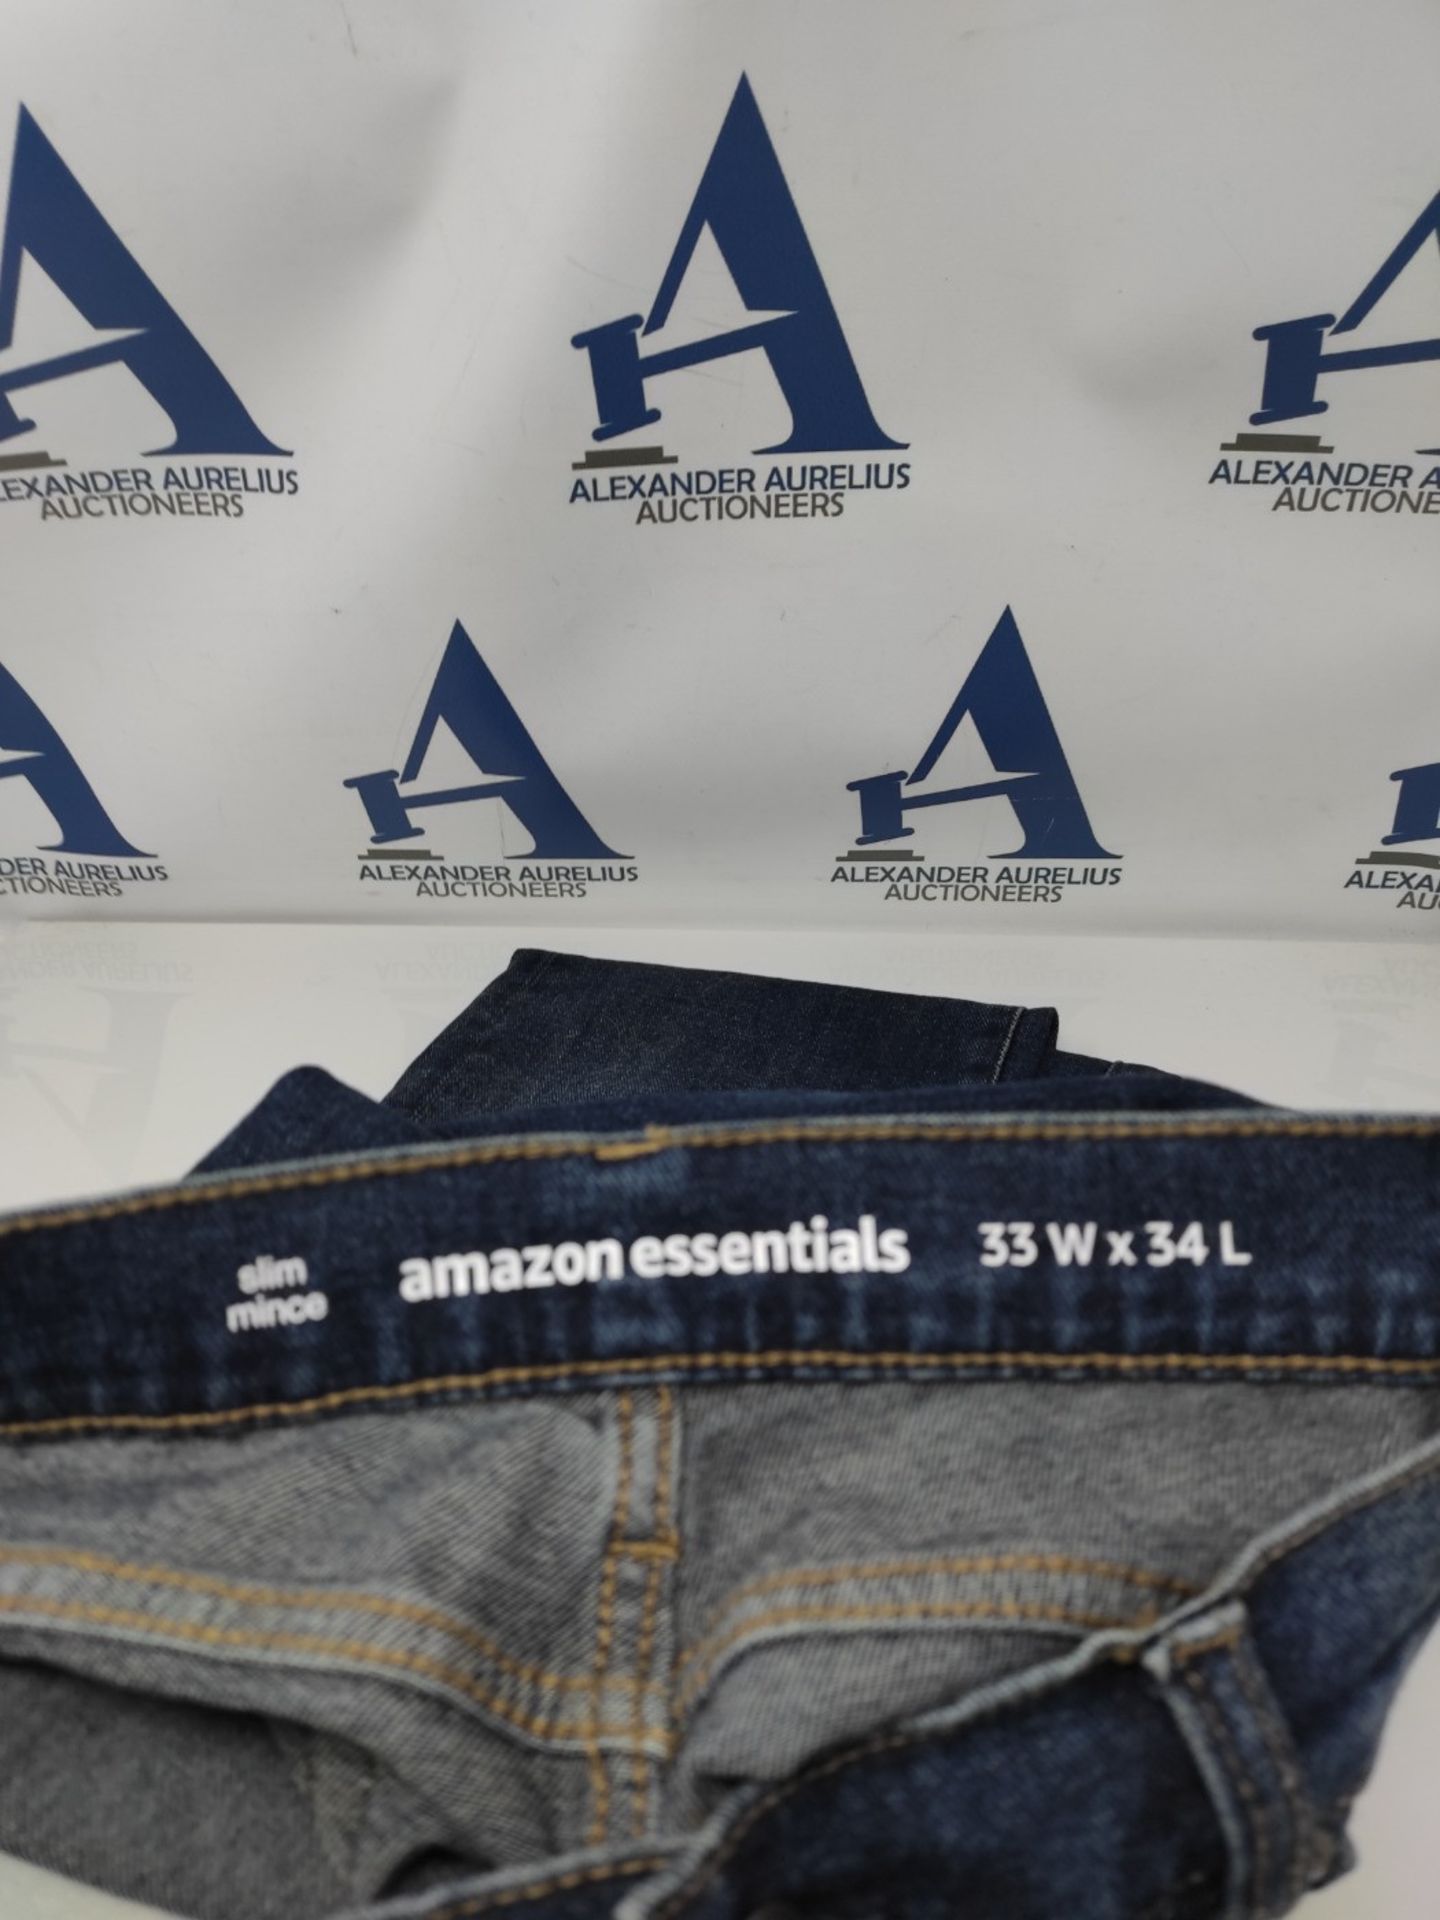 Amazon Essentials Men's Slim-Fit Jean, Dark Indigo/Washed, 33W/34L - Bild 2 aus 2